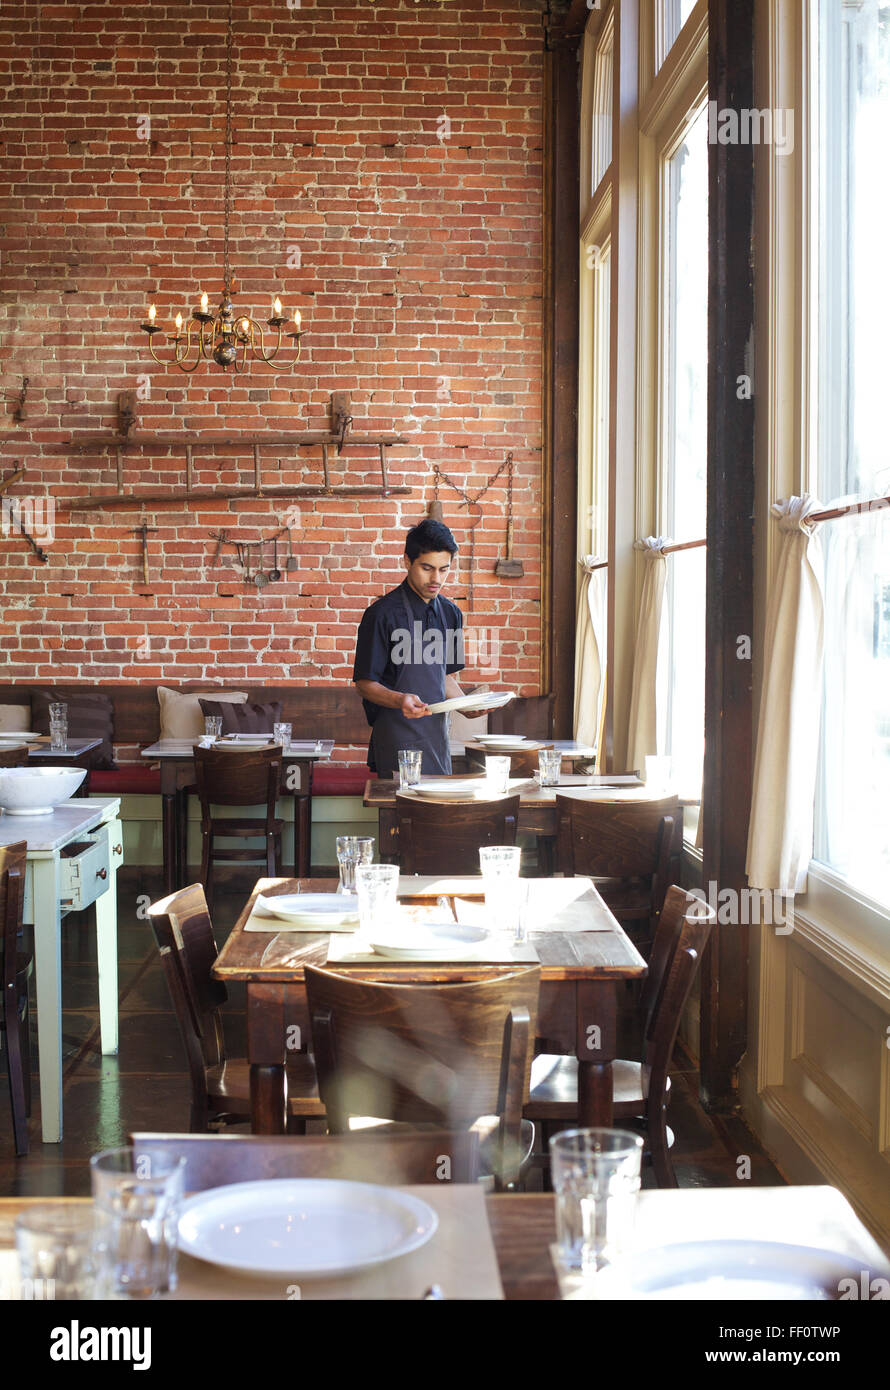 Ein Restaurant-Mitarbeiter deckt den Tisch in einem Restaurant nach dem Mittagessen Gottesdienst. Stockfoto